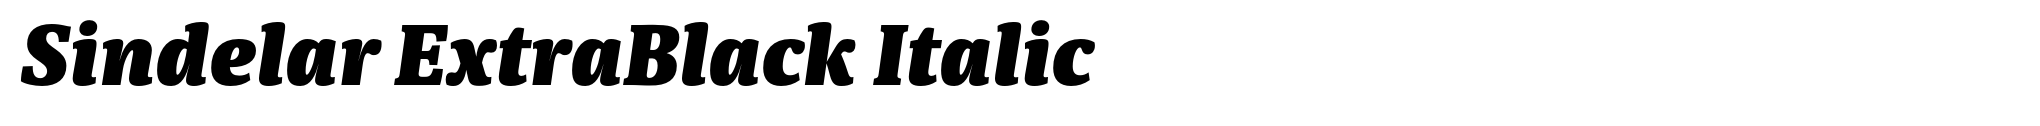 Sindelar ExtraBlack Italic image